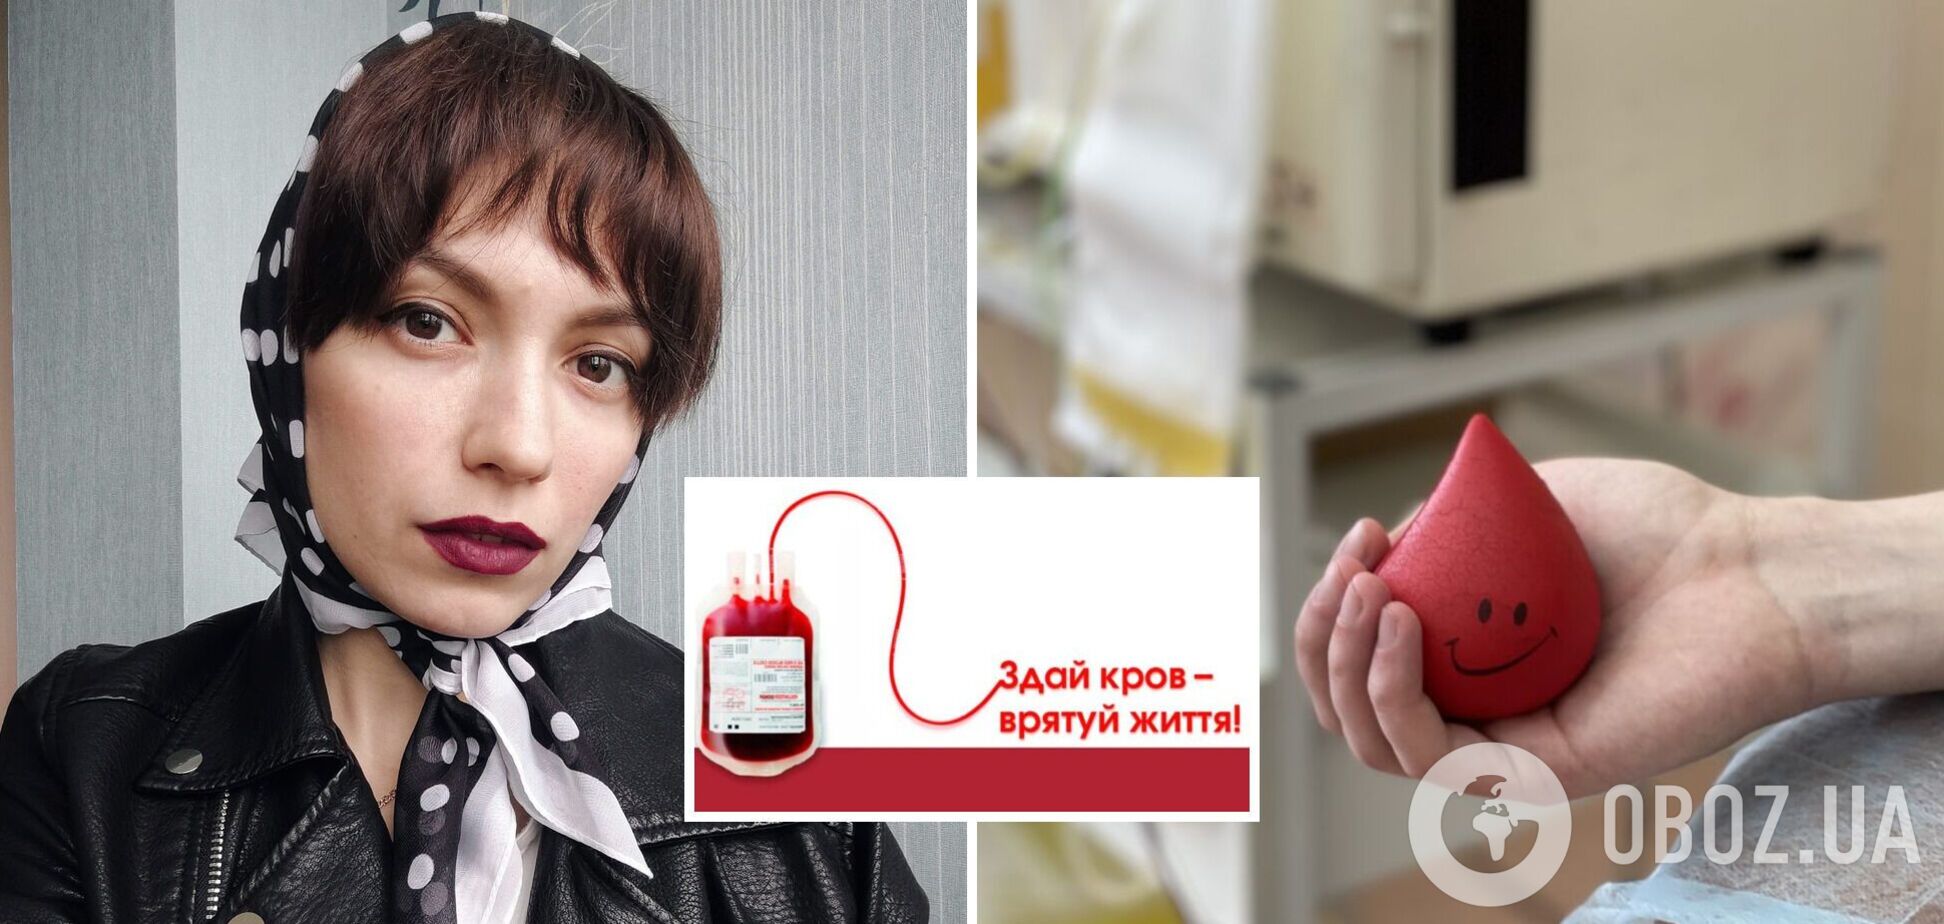 Українців просять здати кров, щоб врятувати життя 26-річній красуні-киянці: дівчина страждає від рідкісної аномалії судин. Фото